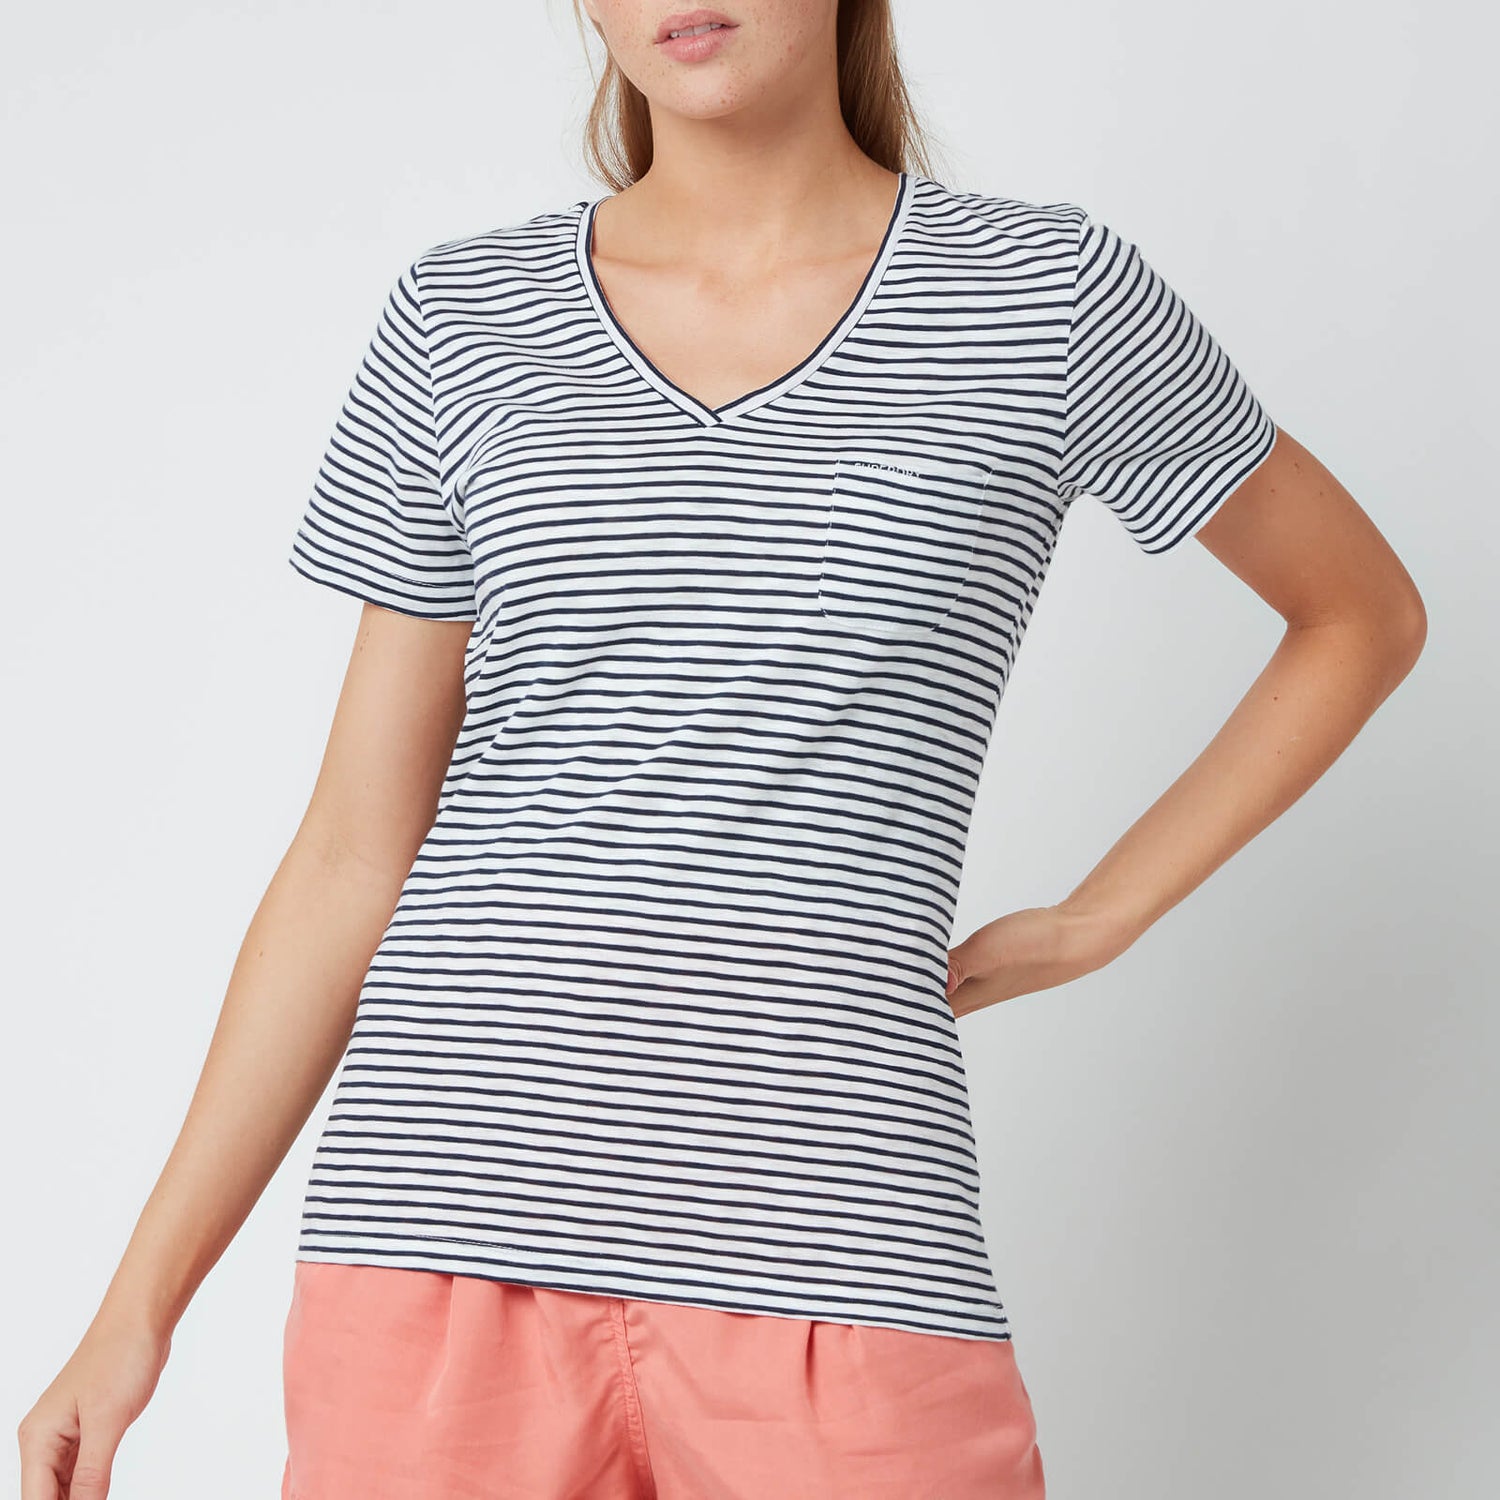 Superdry Women's Pocket V Neck T-Shirt - Navy Breton